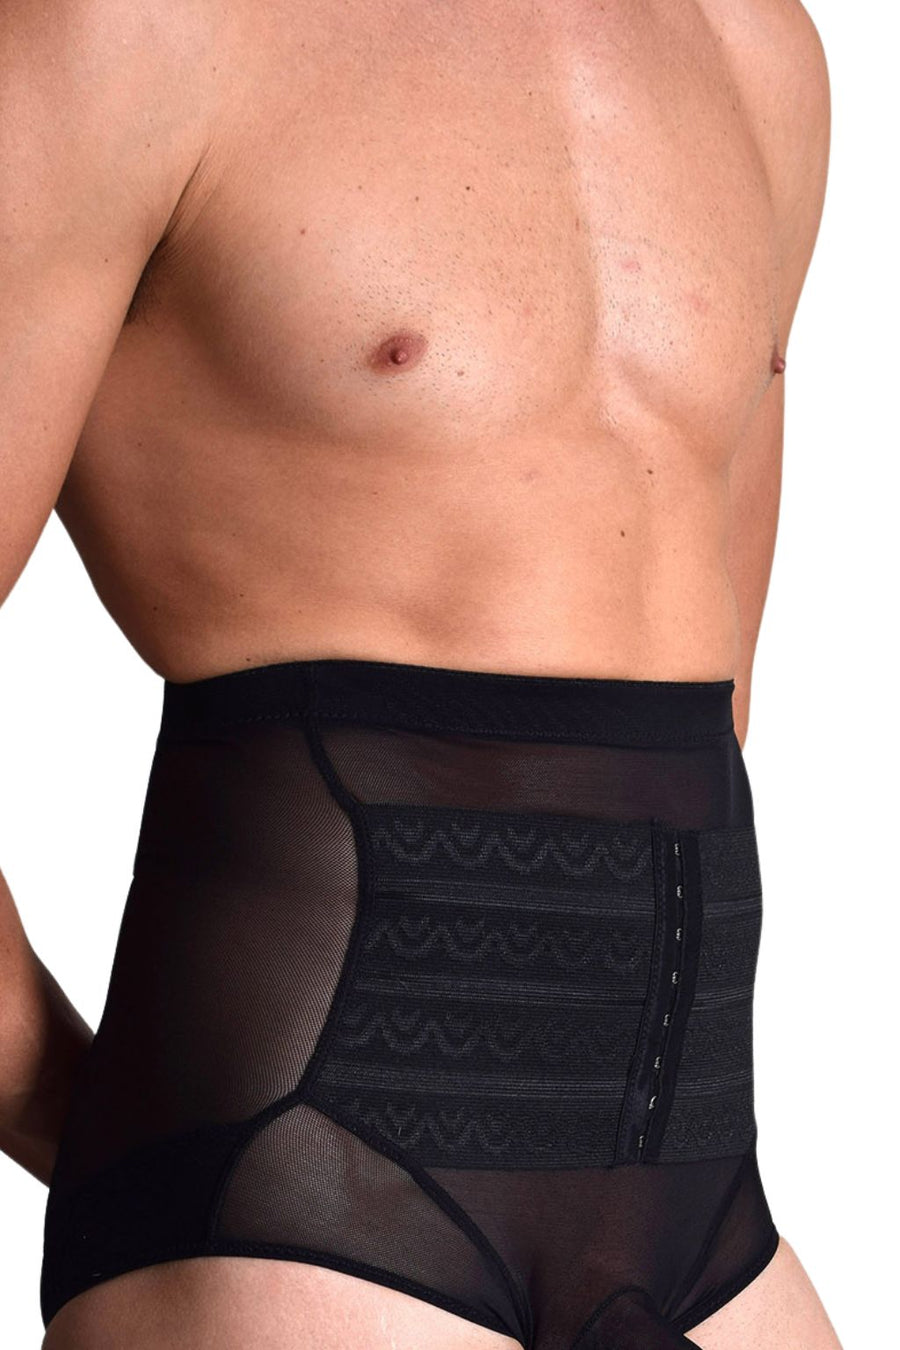 Maoww Men Underwear Waist Trainer Corset Underpants Body Shapewear Black L